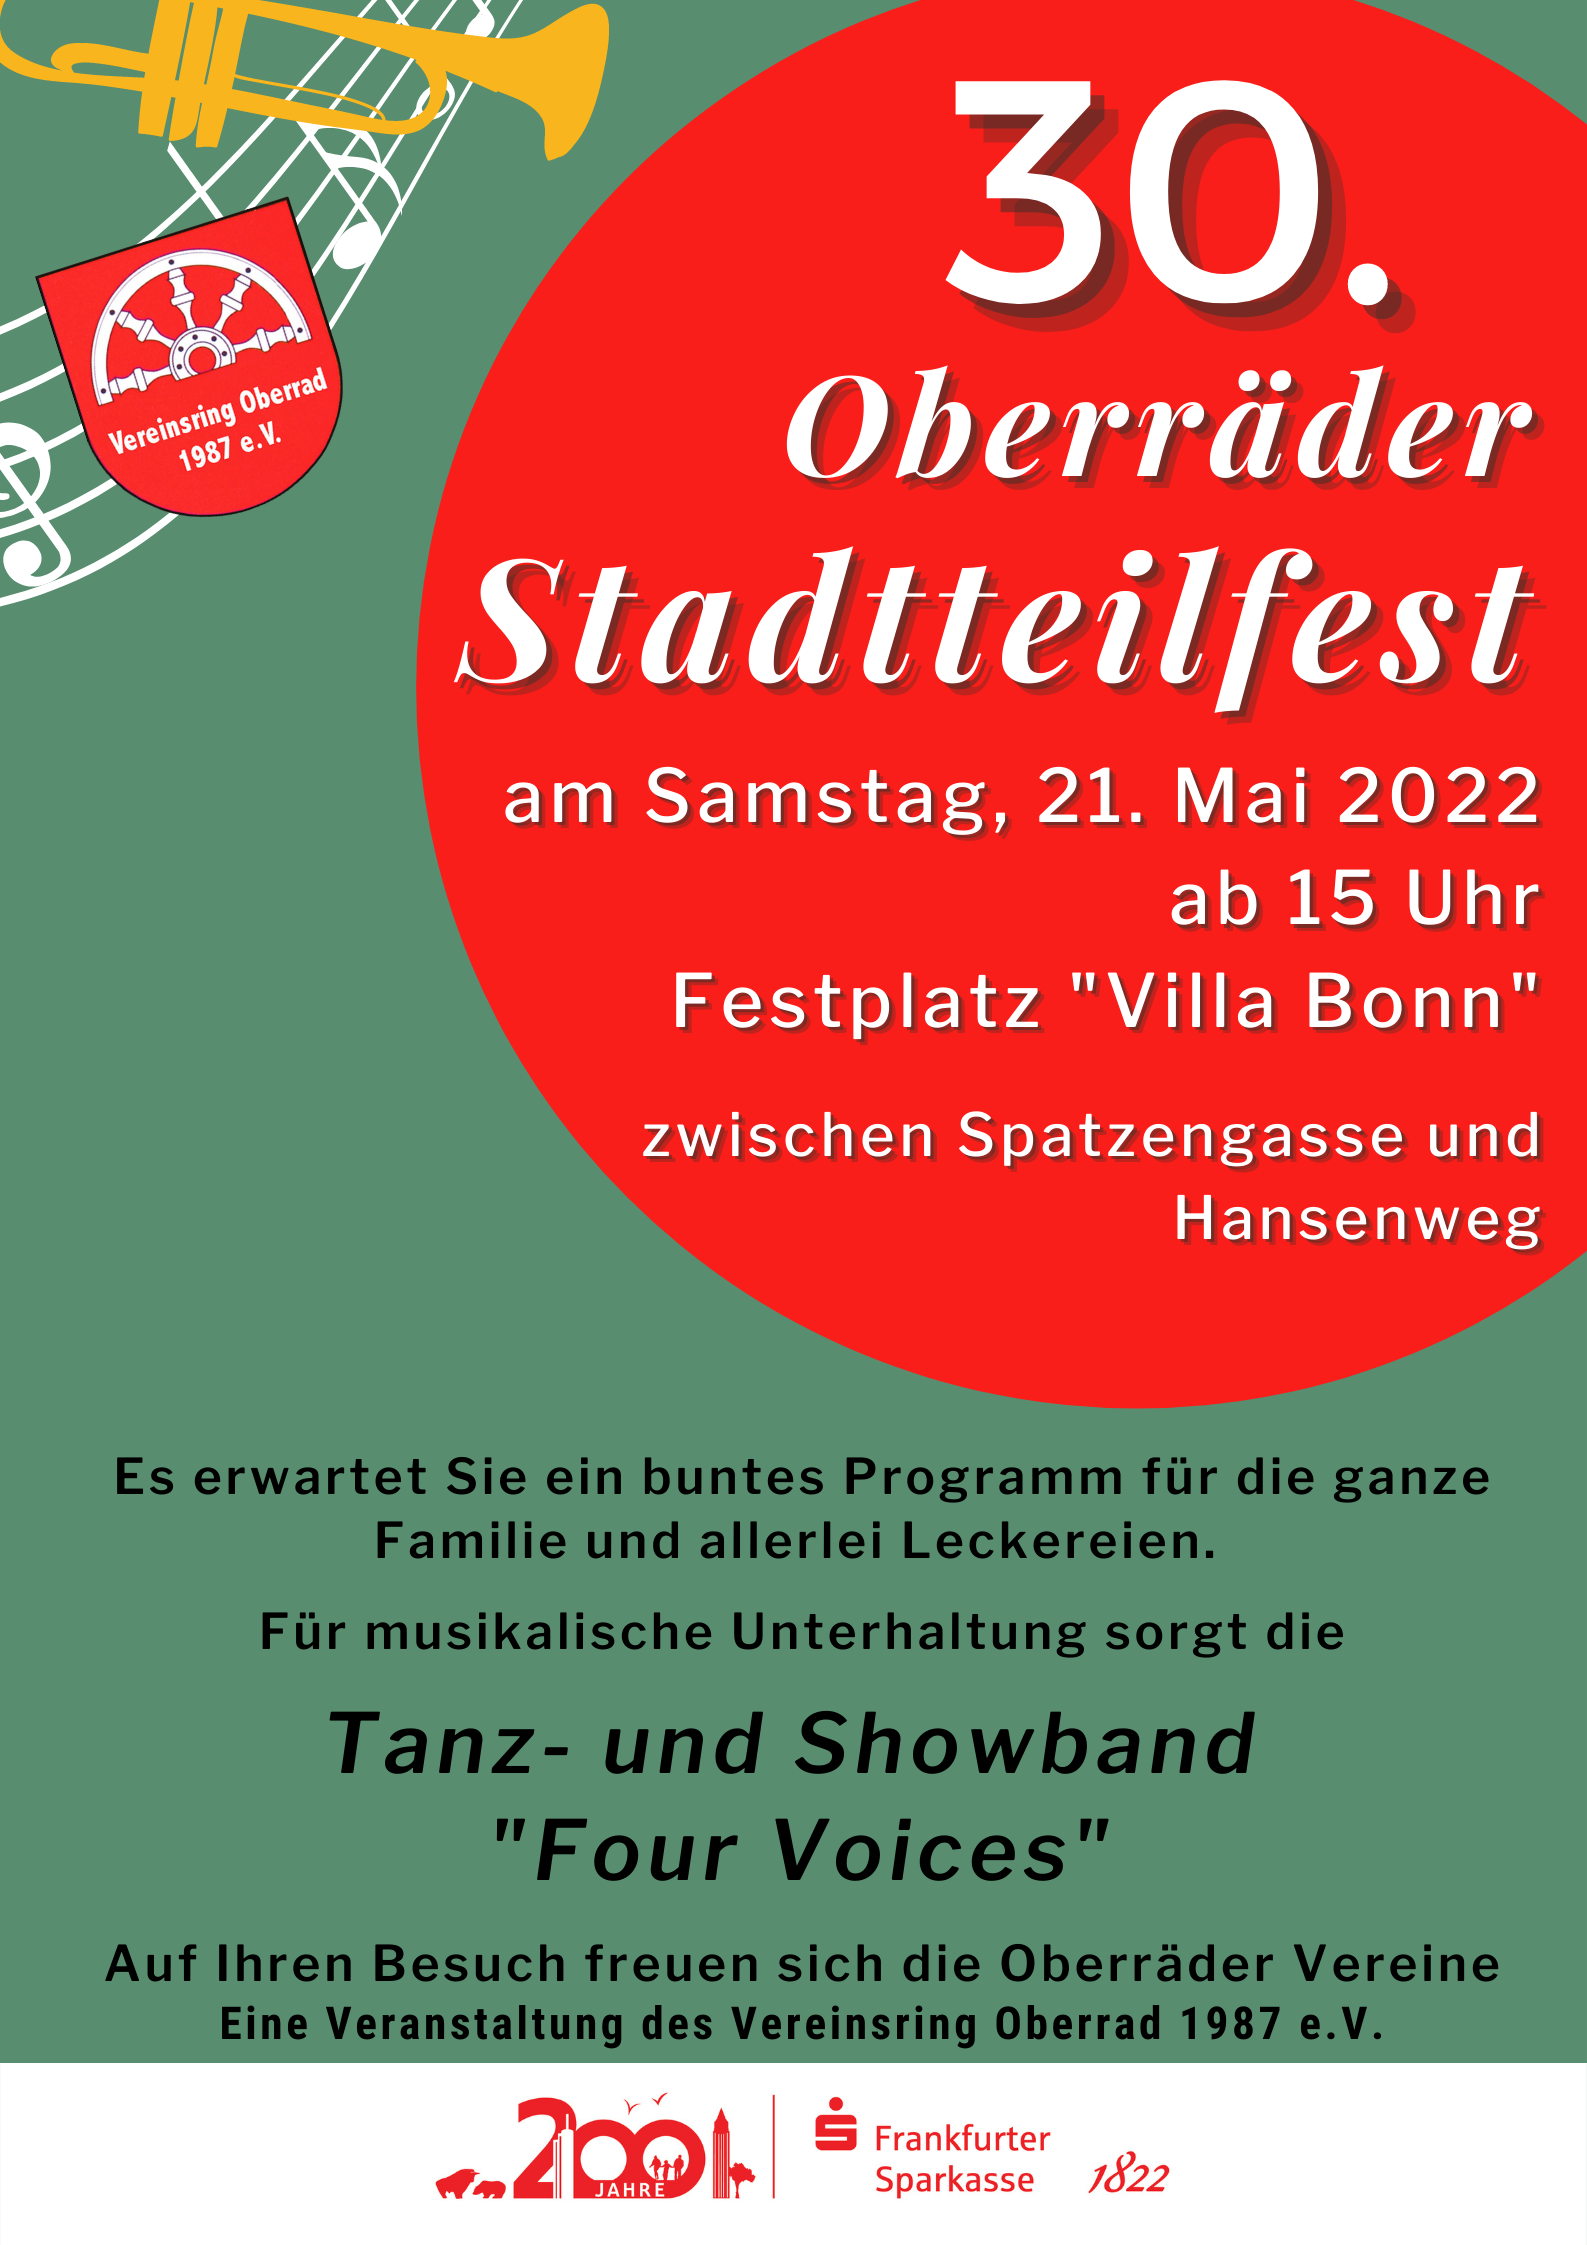 Oberraeder Stadtteilfest 2022